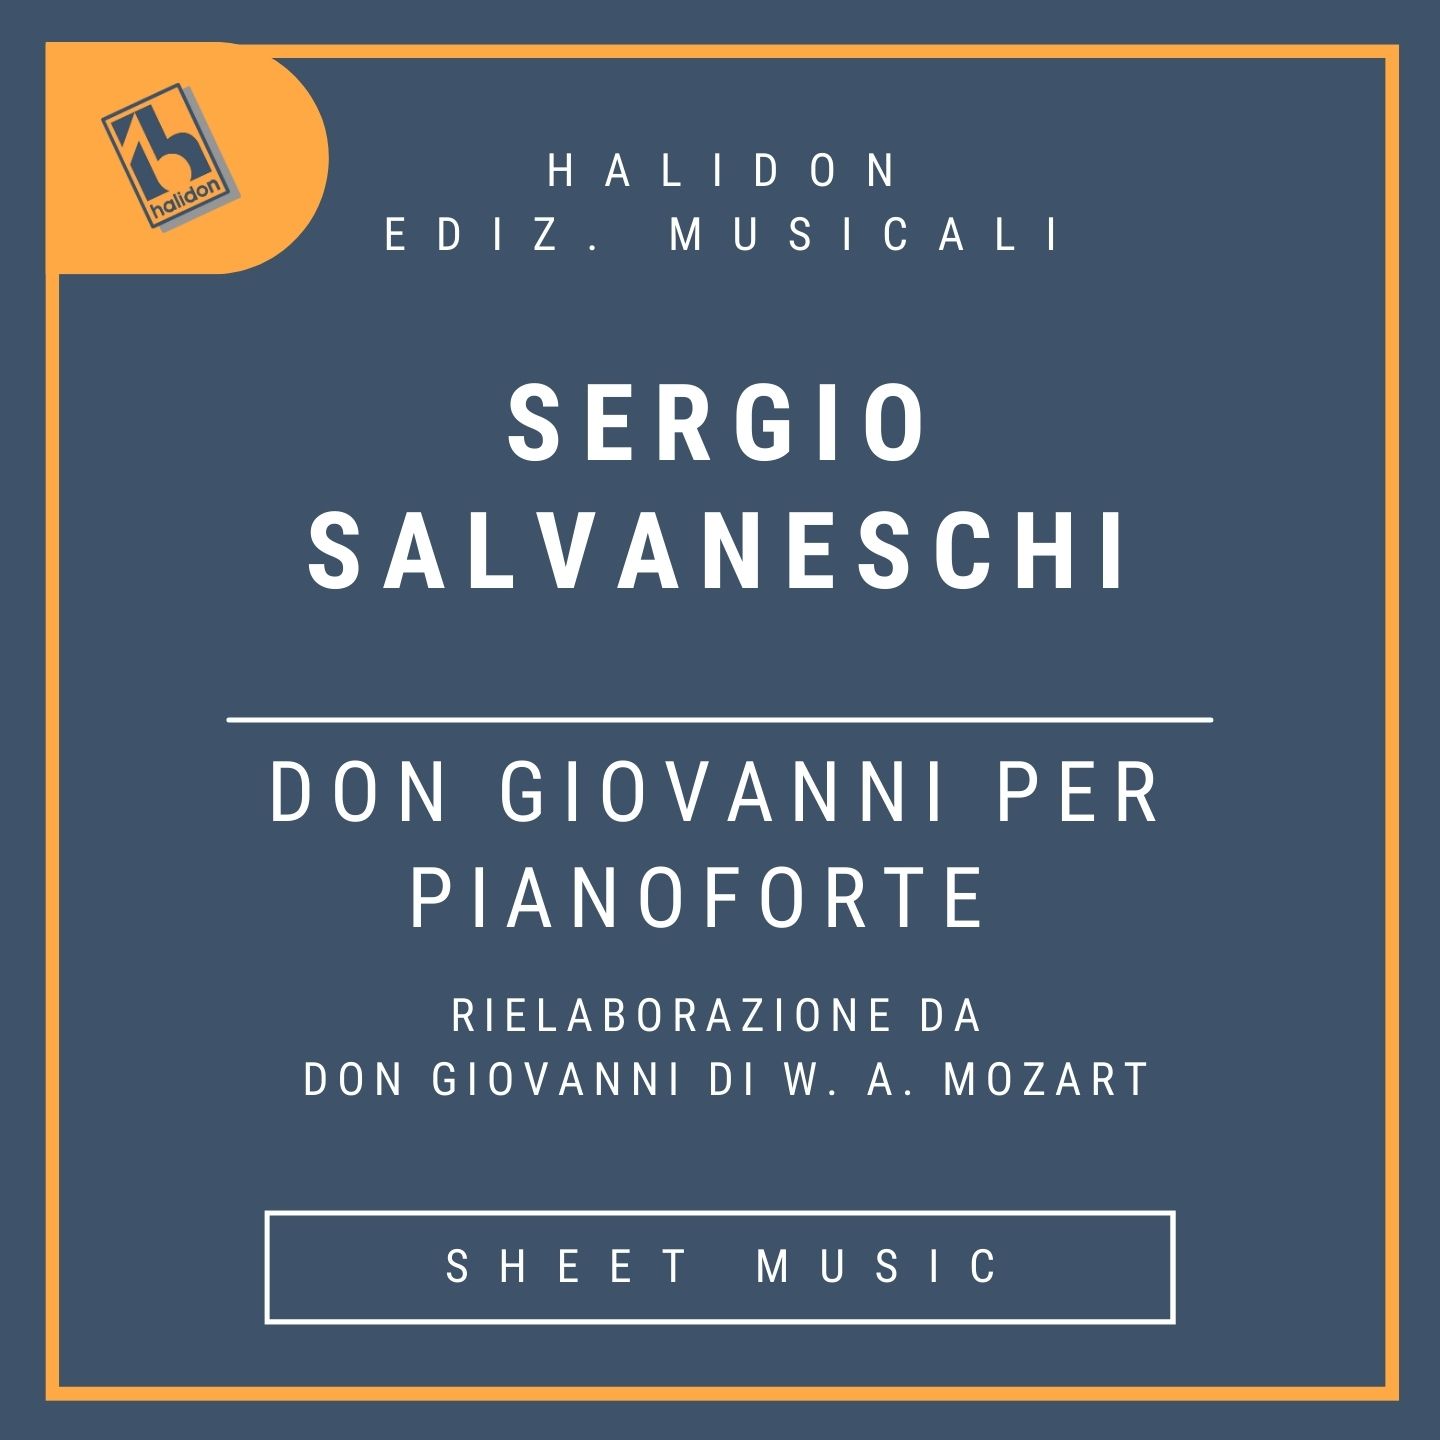 Don Giovanni per pianoforte (Rielaborazione da Don Giovanni di W. A. Mozart)